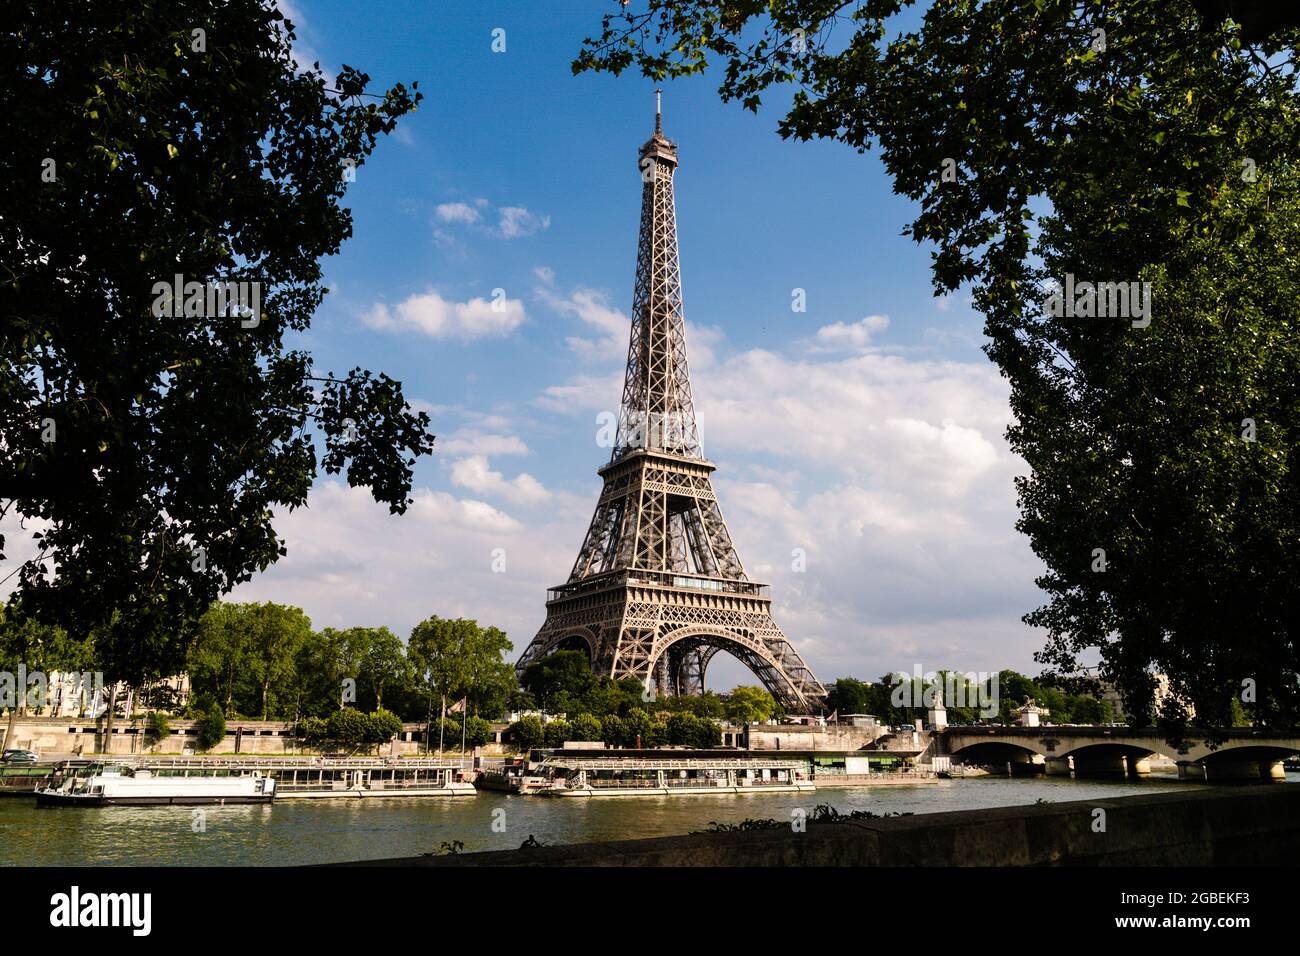 La Tour Eiffel, un monument parisien qui est aussi un chef-d'œuvre technologique dans l'histoire de la construction. Banque D'Images